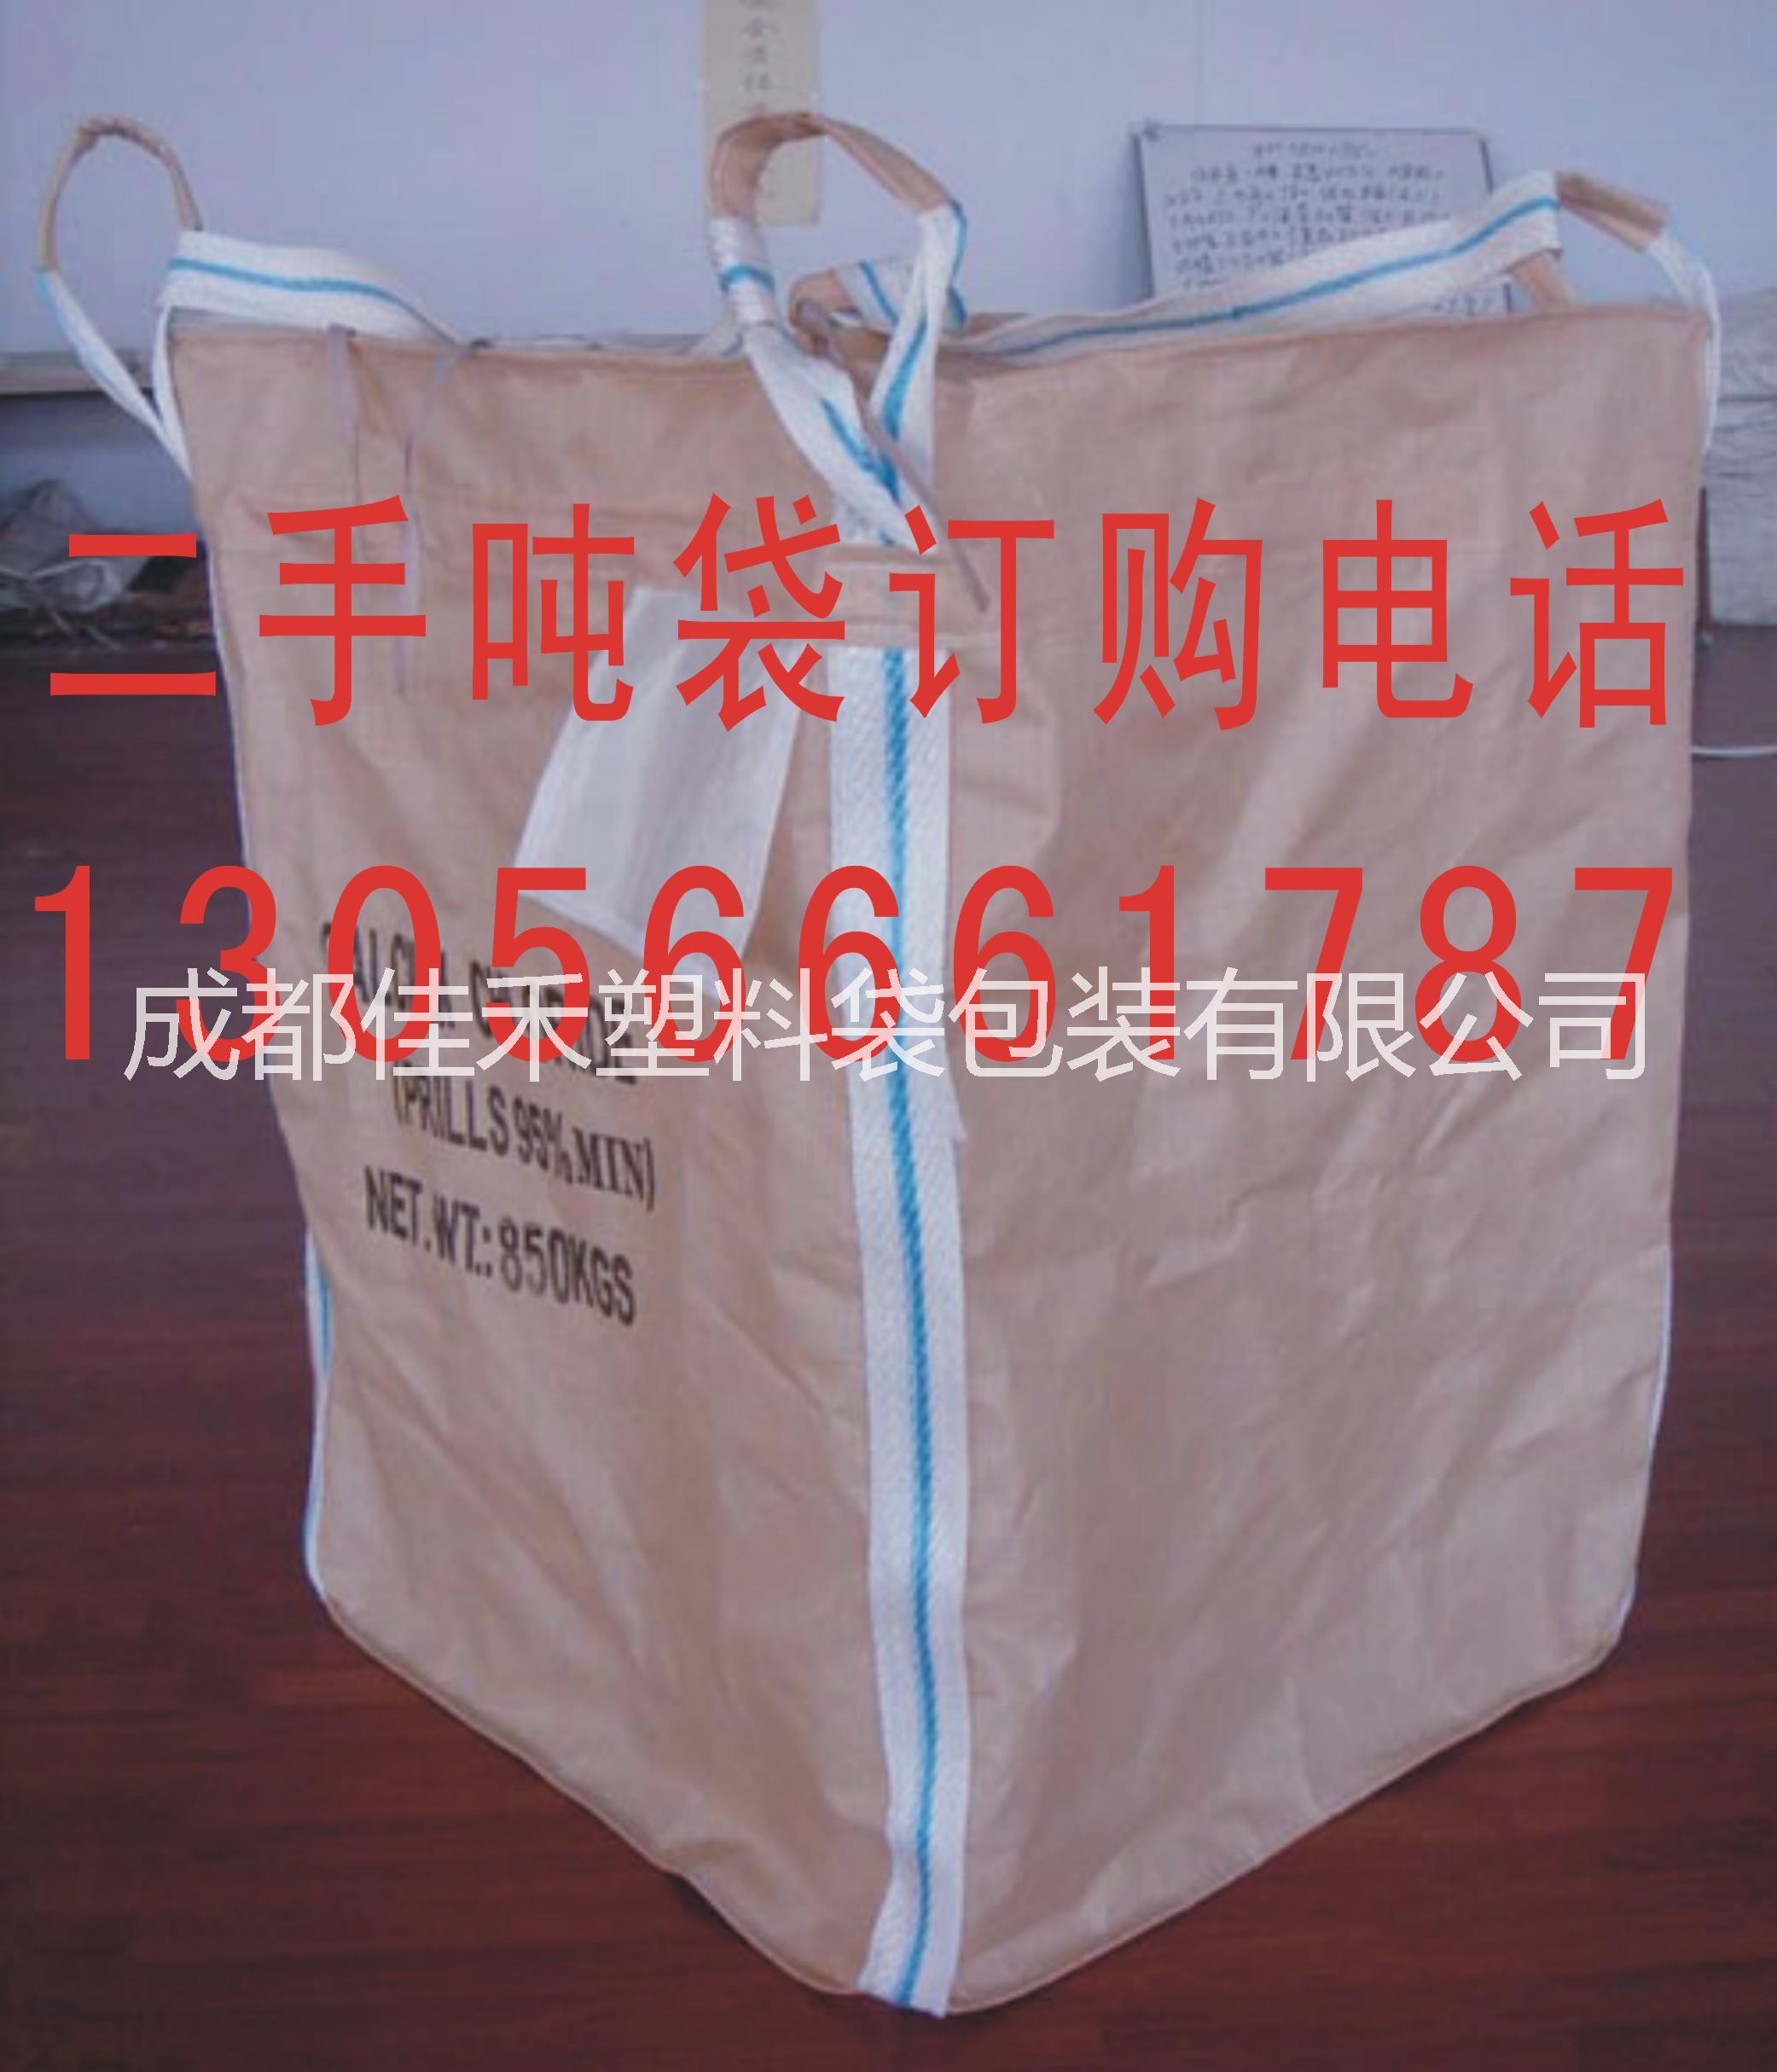 成都嘉禾吨袋包装公司是一家专业做批发